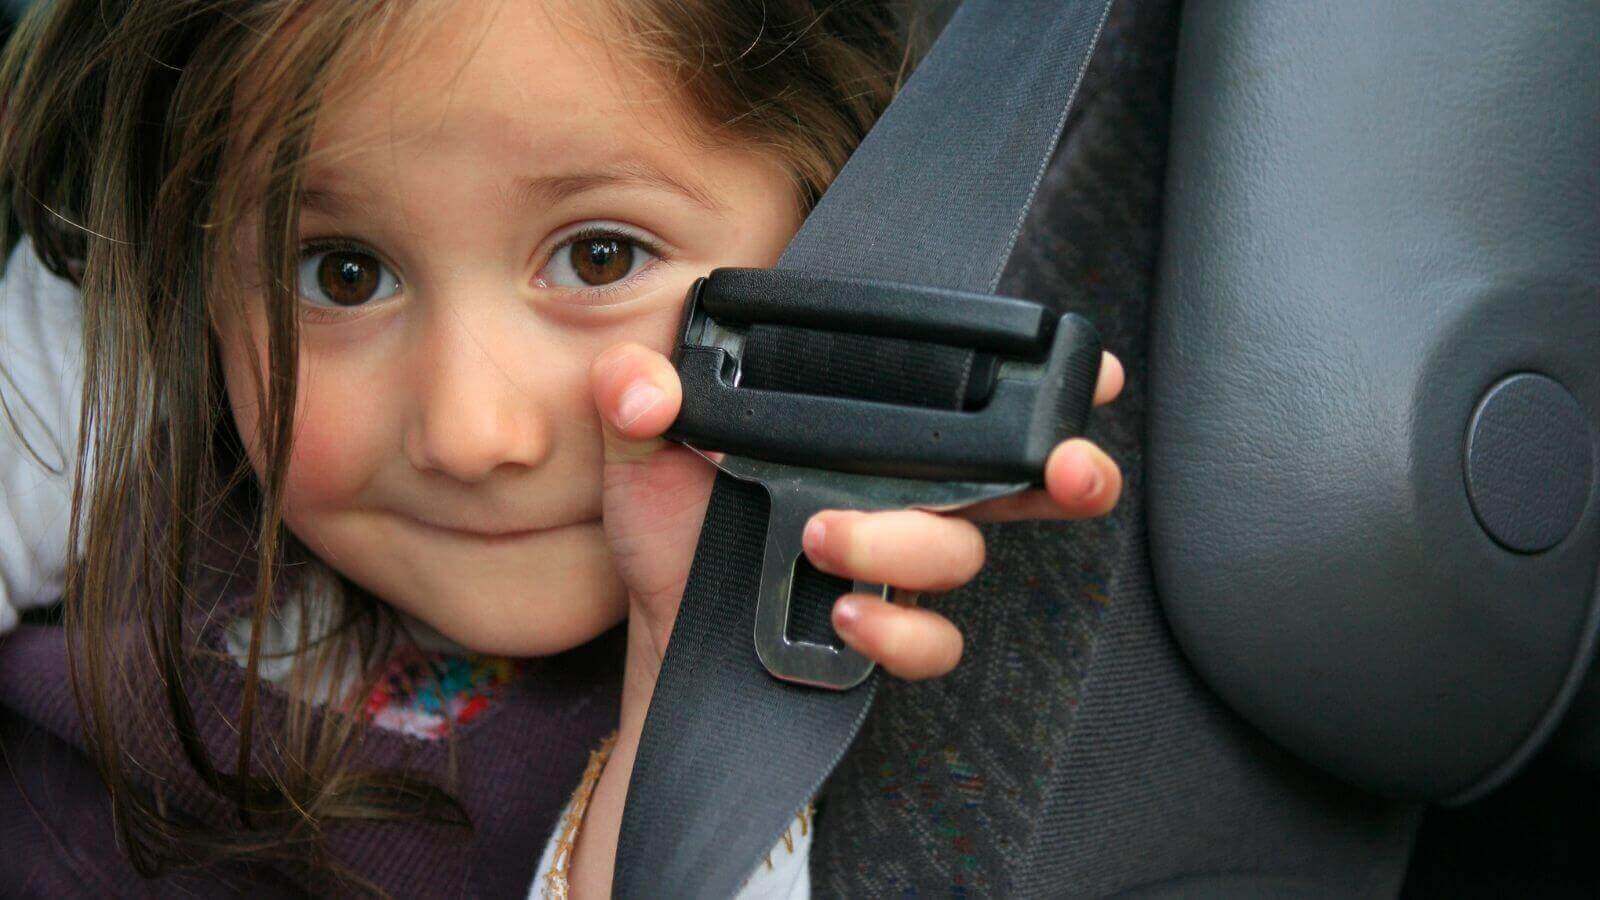 Criança com cinto de segurança na mão